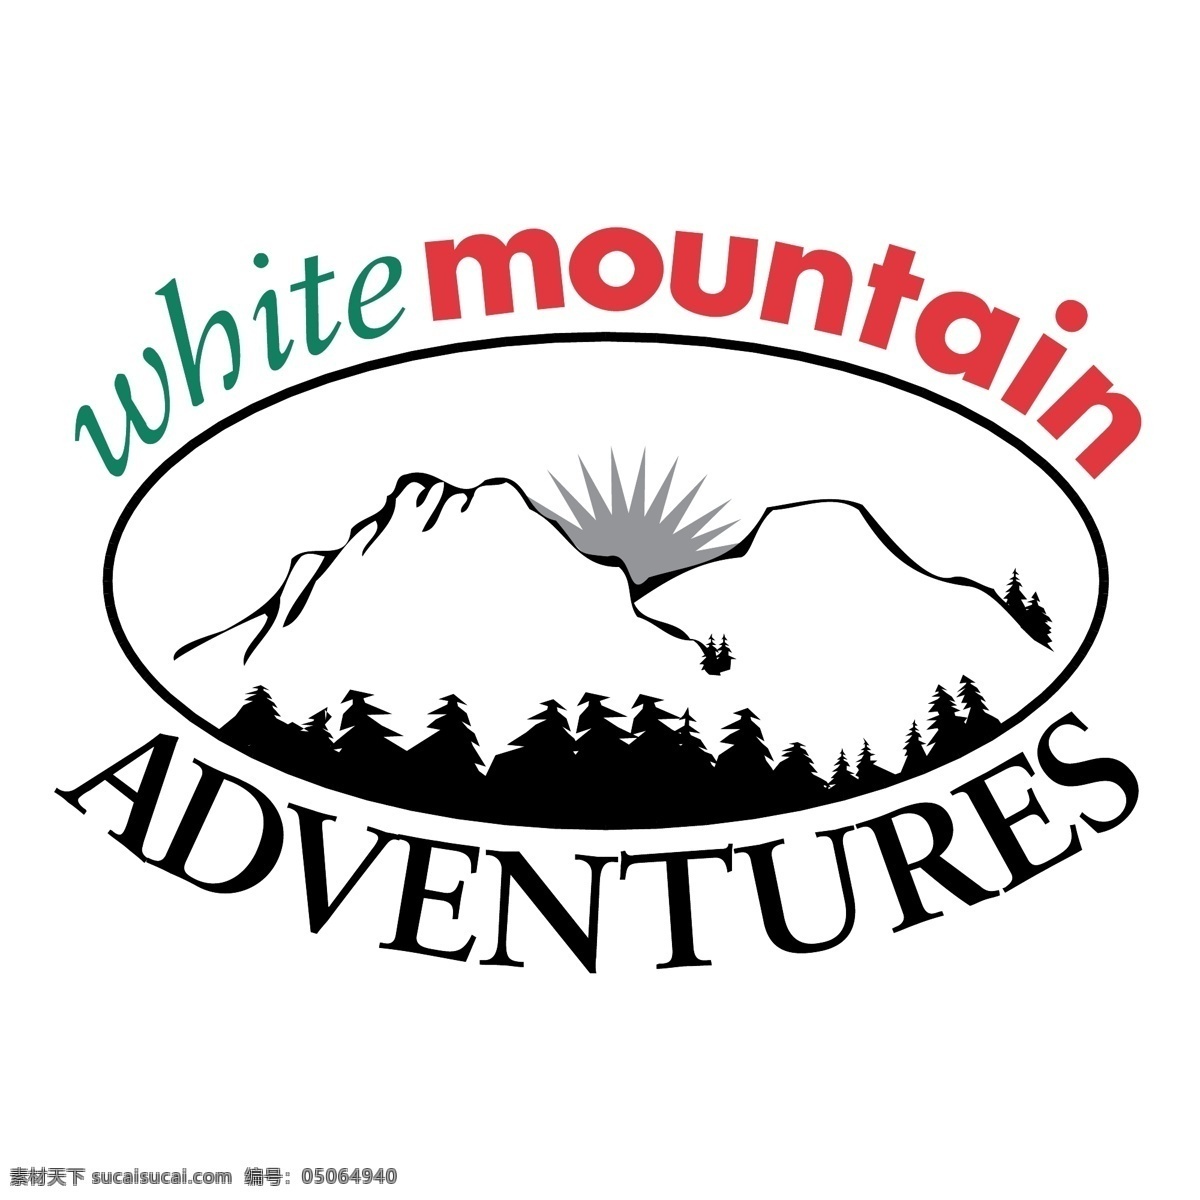 白色 山 冒险 自由 白 标志 标识